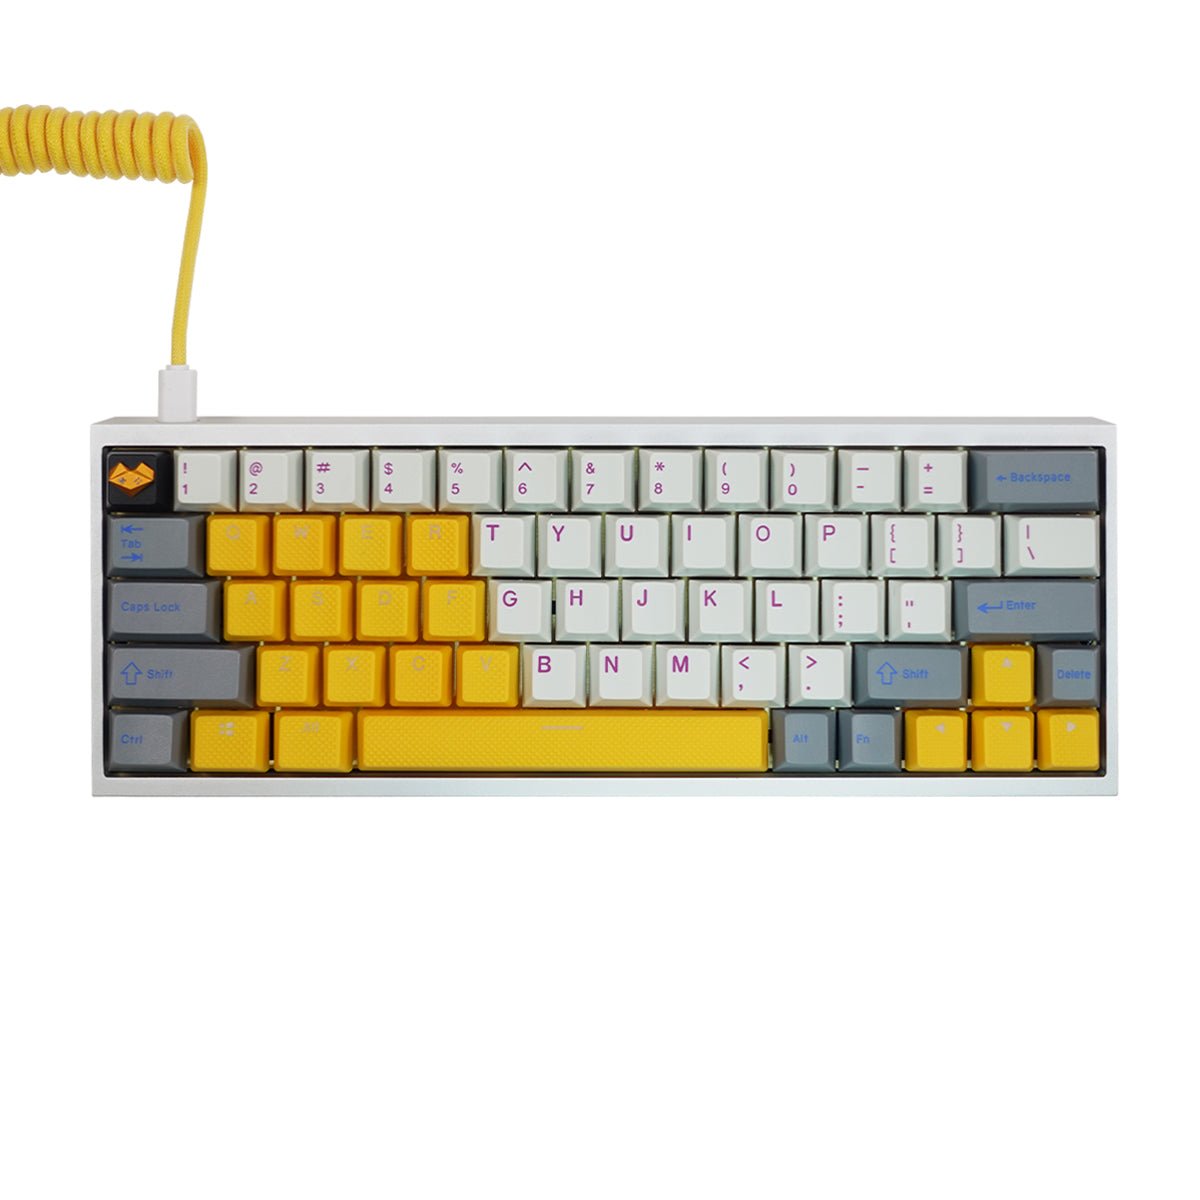 Pre-Build Keyboard | لوحة مفاتيح مجهزة - Store 974 | ستور ٩٧٤